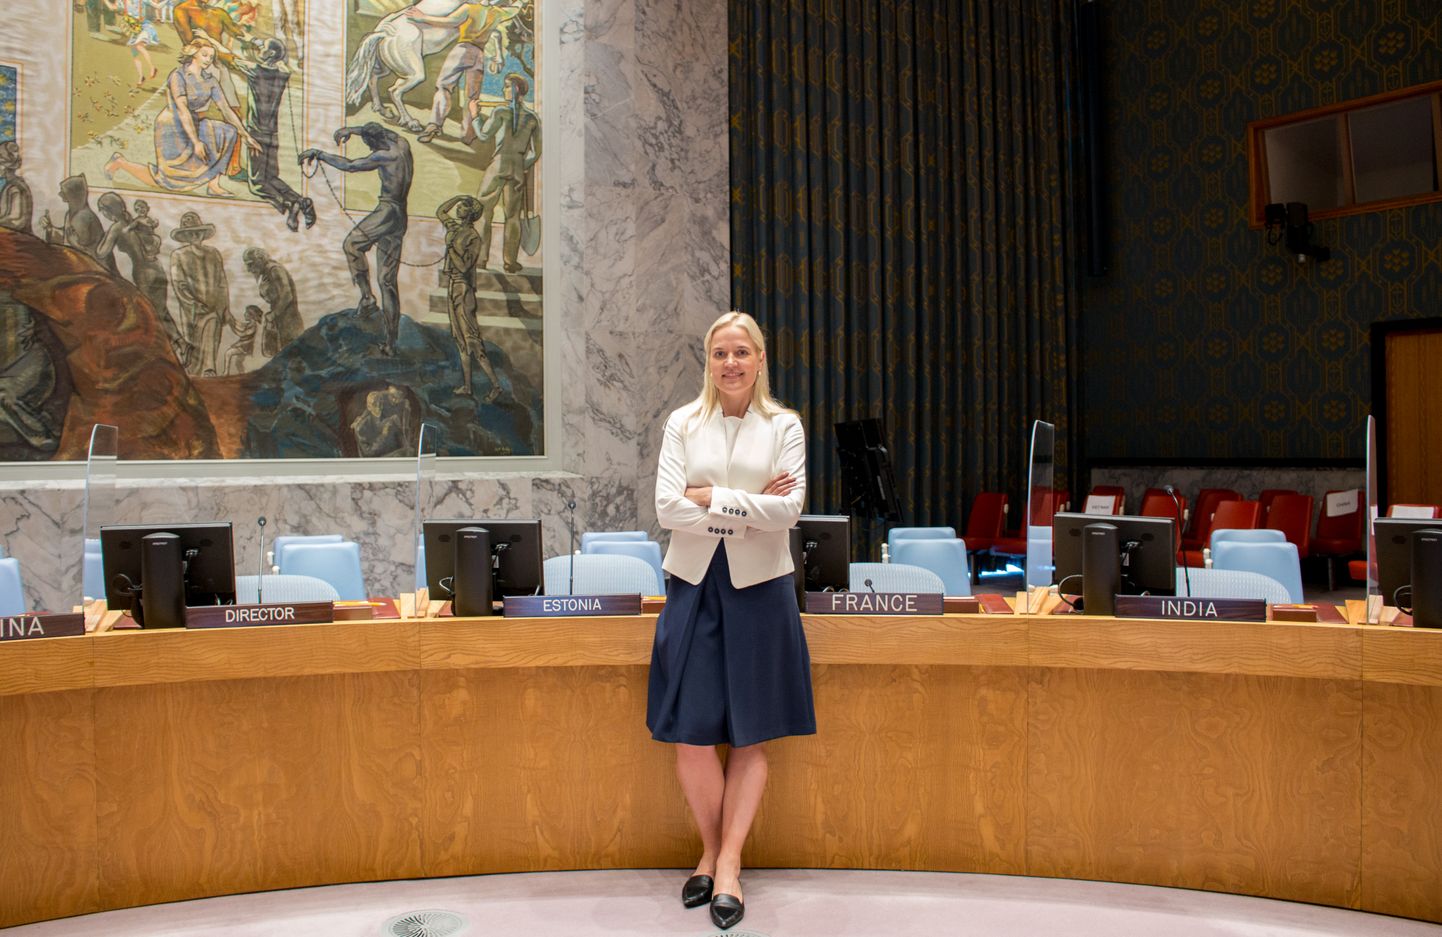 VÕRDNE: Eesti on ÜRO julgeolekunõukogus suurte riikidega võrdne, kinnitab Kristel Lõuk.